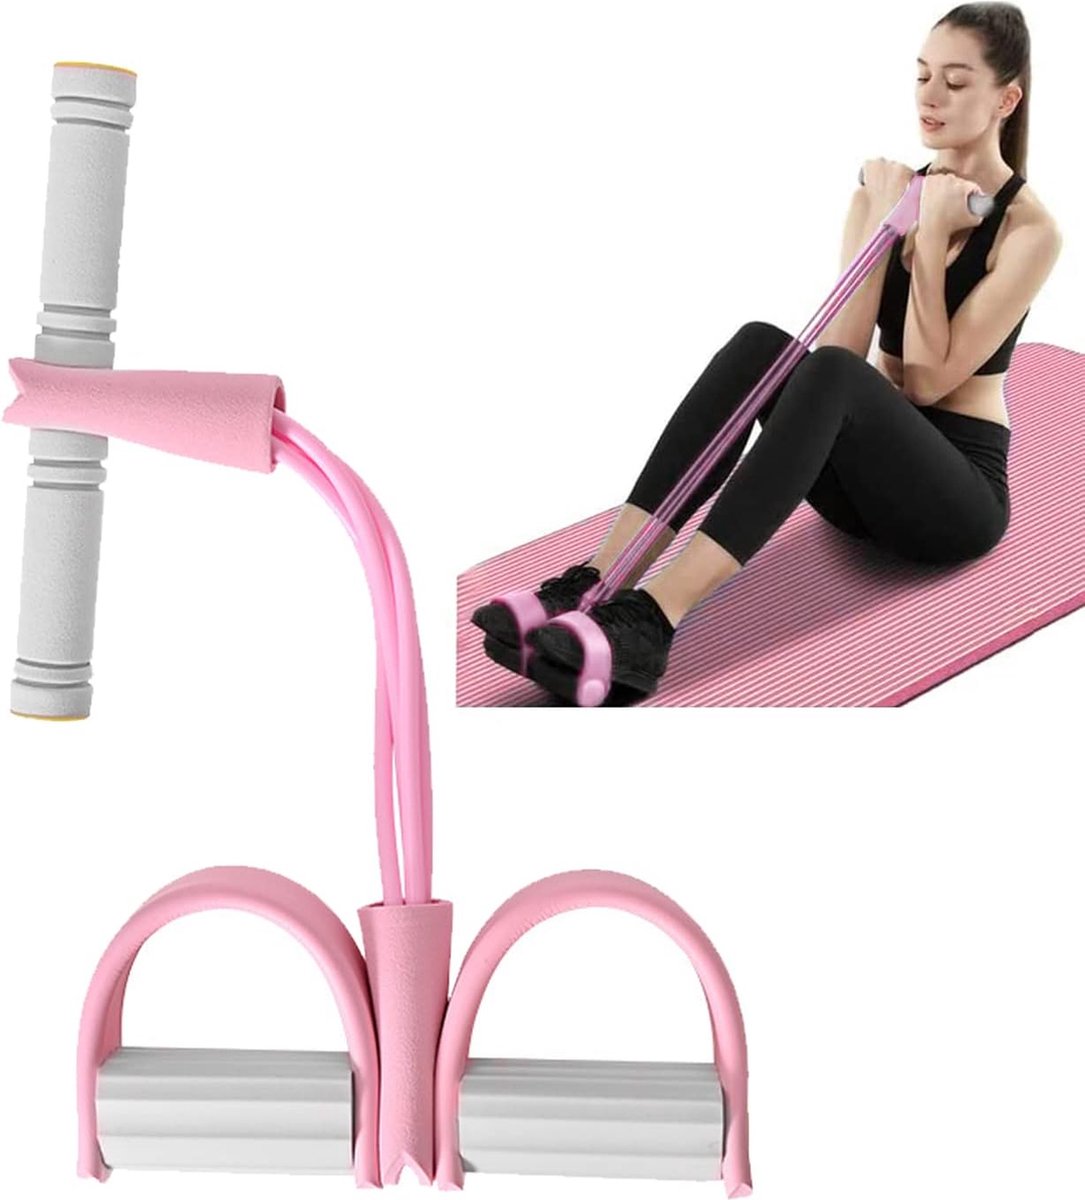 Fitness elastisch trekkoord Roze - buiktrainer, 4 tubes, multifunctionele been-oefenaar, bovenarmtrainer, goed voor billen, dijen - voor thuis fitnessen, kantoor, buiten helpt bij afvallen, spiergroei - Lichtgewicht en draagbaar